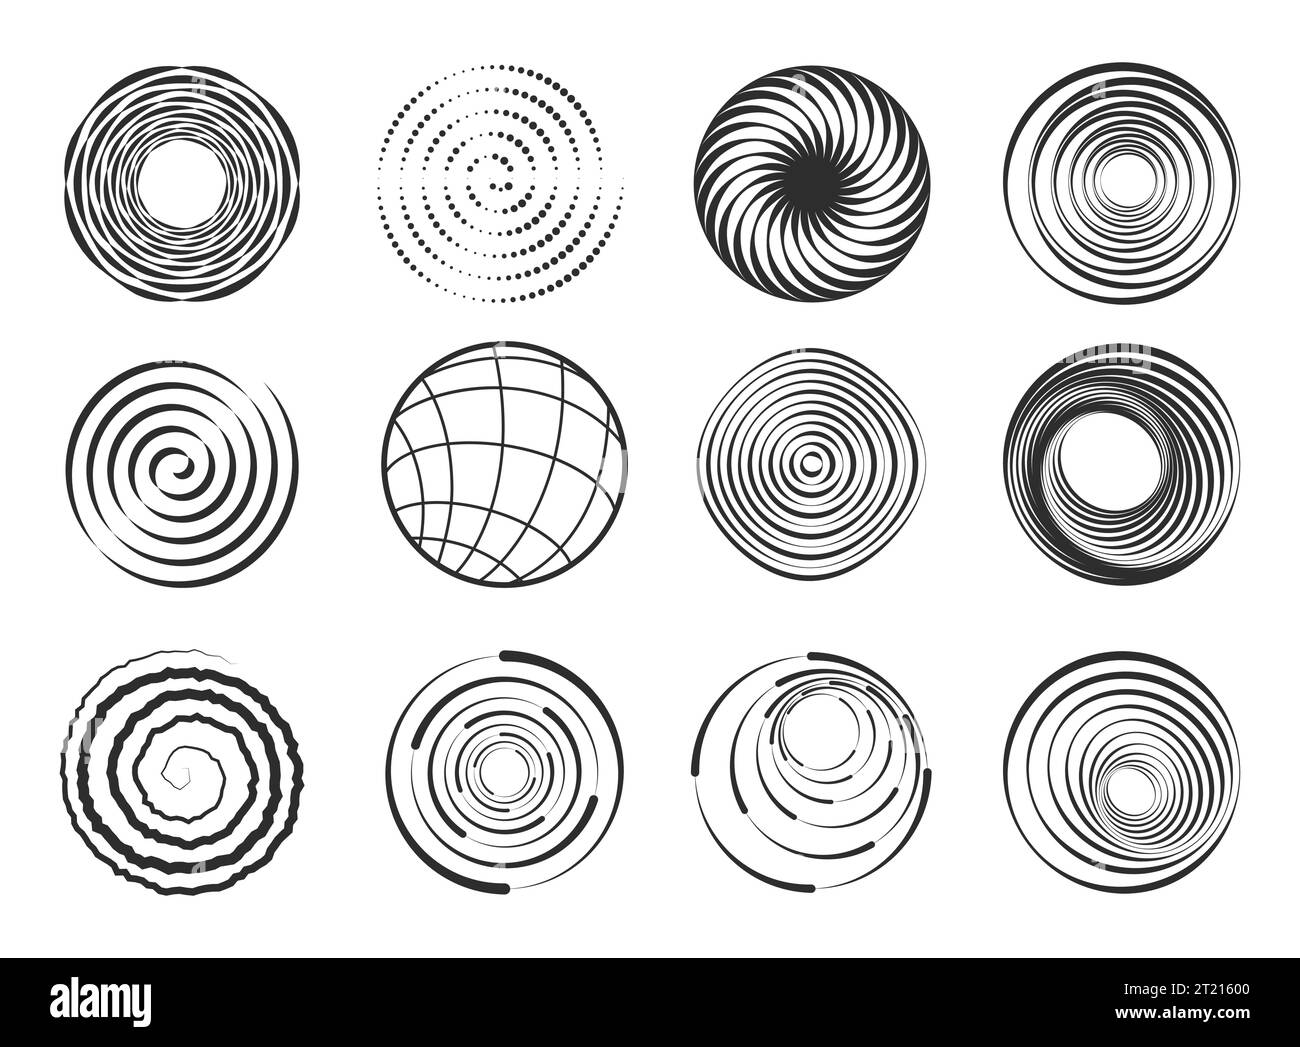 Formes en spirale. Figures géométriques abstraites de tourbillon, éléments abstraits modernes de spirale de cercle ondulé, éléments de conception de bordure noire de mouvement Illustration de Vecteur